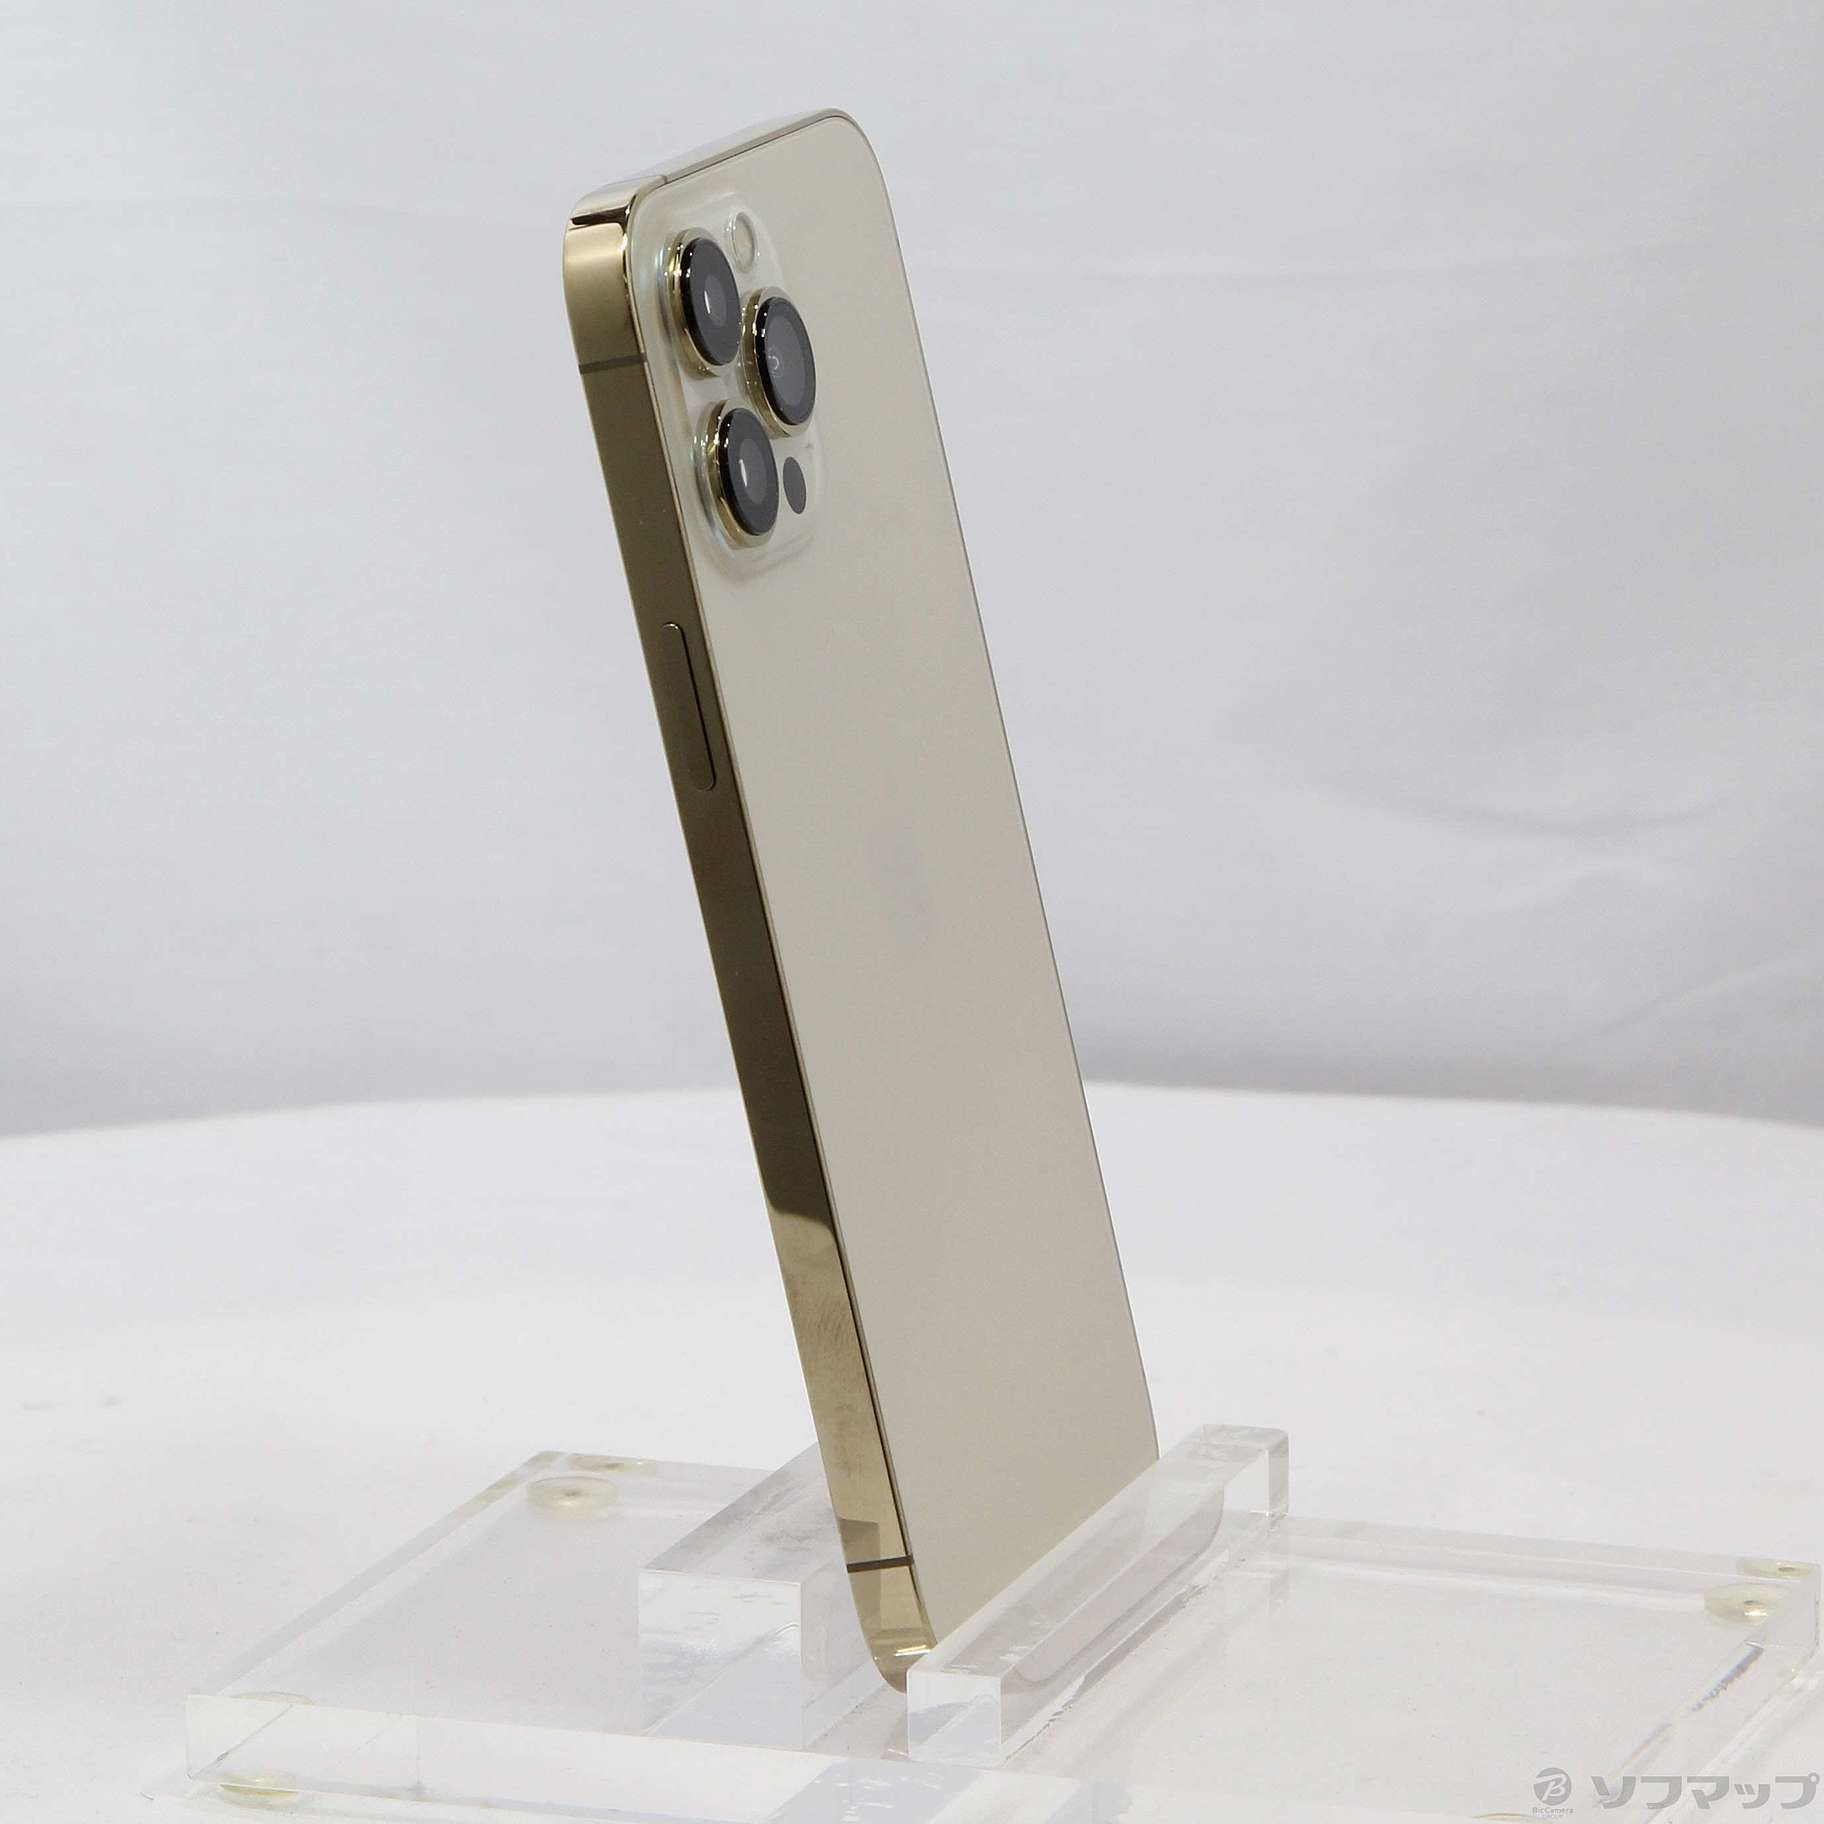 新発売 Max Pro 13 iPhone MLJ63J/A 128GB SIMフリー ゴールド iPhone